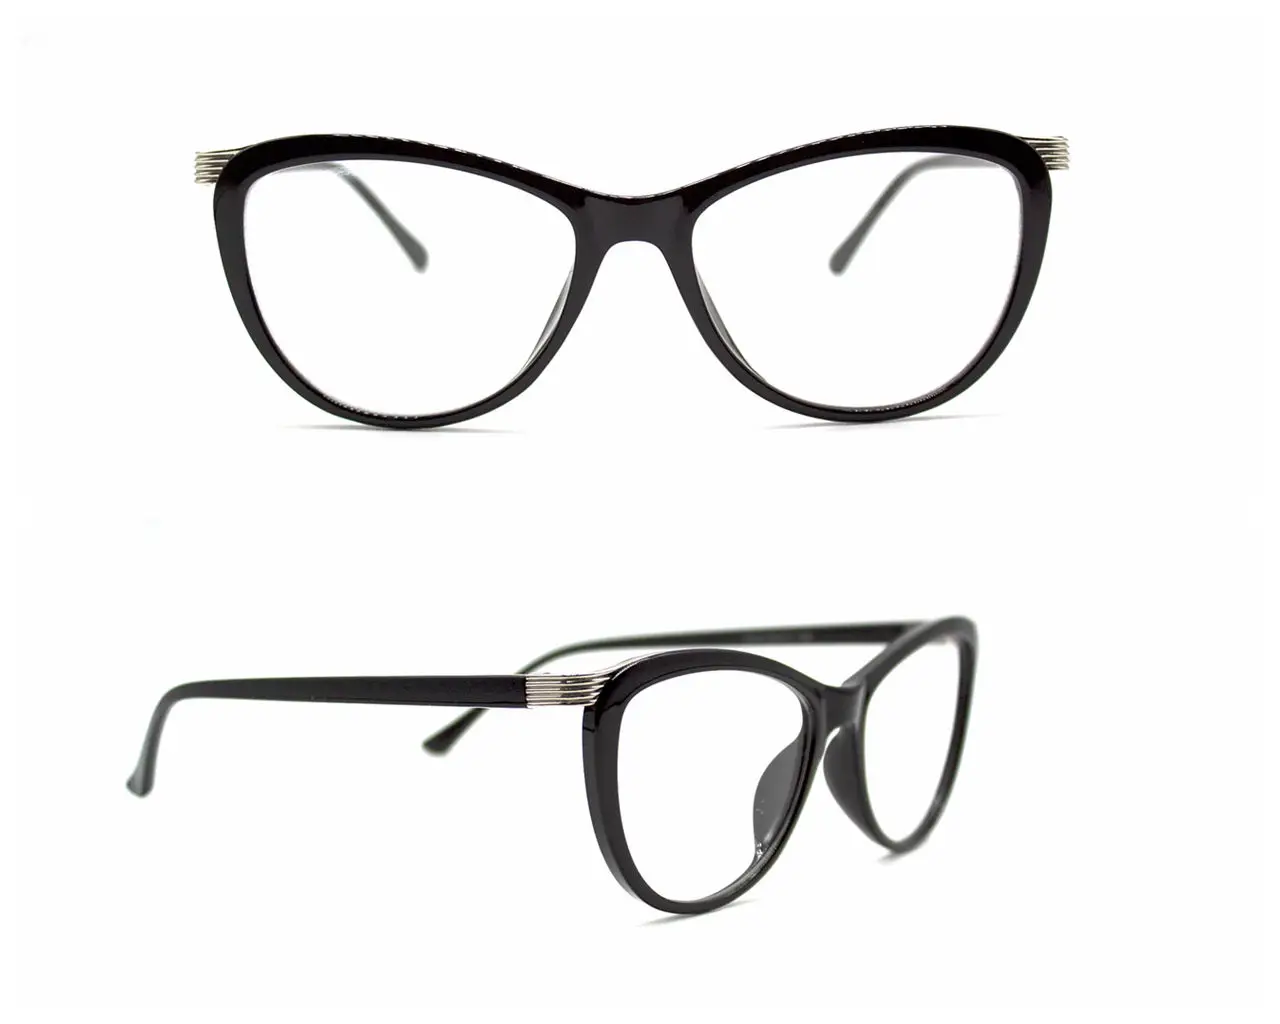 LuckTime повседневные Модные женские очки оправа ретро круглые очки для близорукости Женские оправы для оптических очков#1810